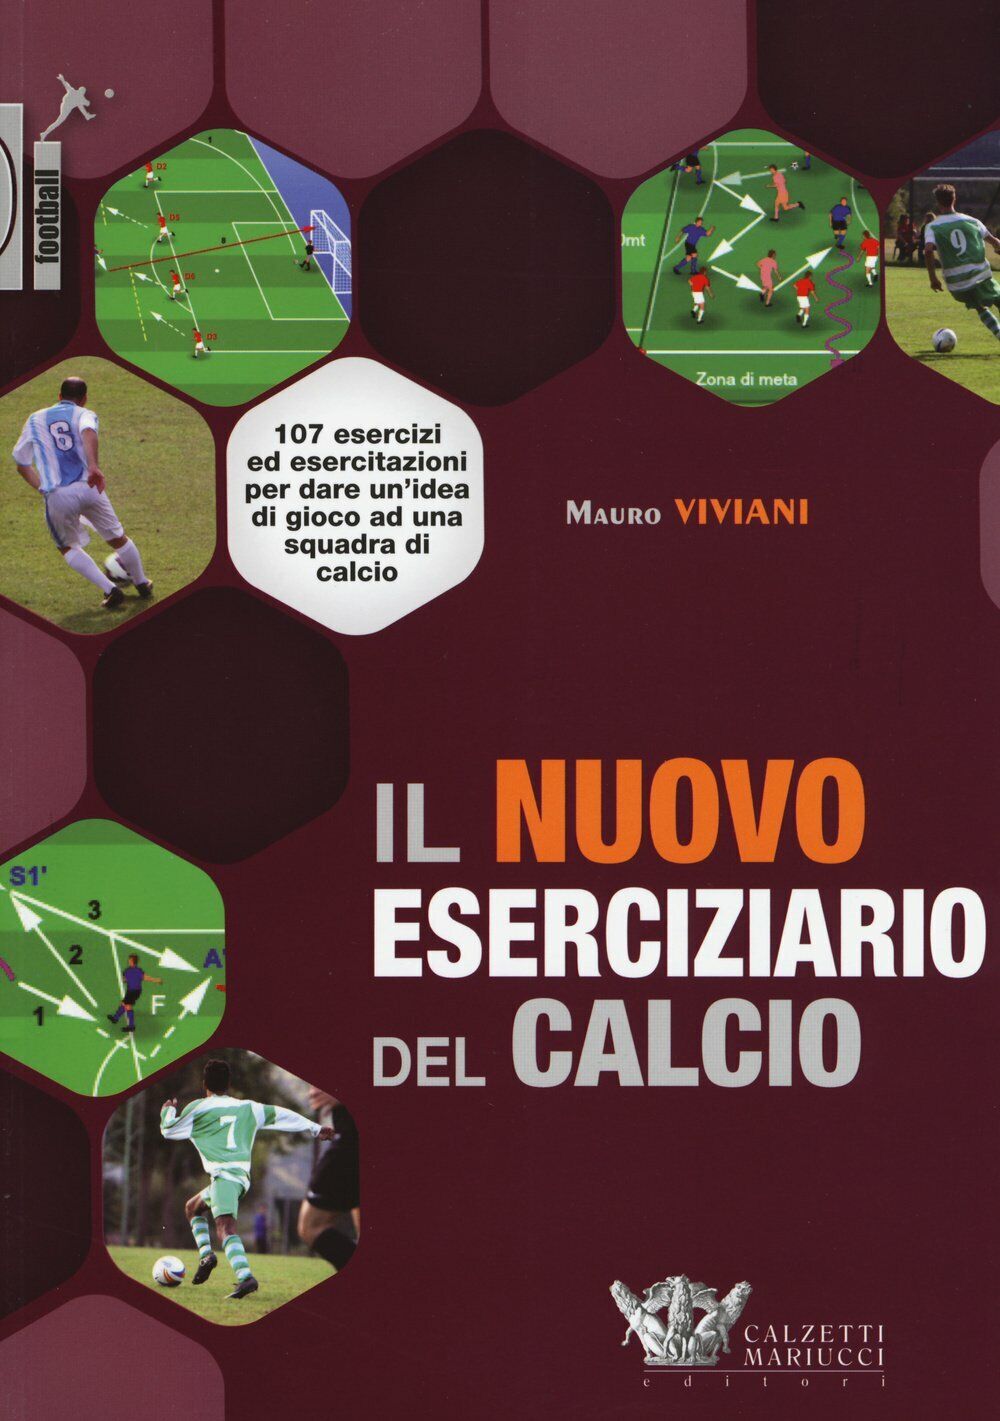 Il nuovo eserciziario del calcio - Mauro Viviani - Calzetti Mariucci, 2015